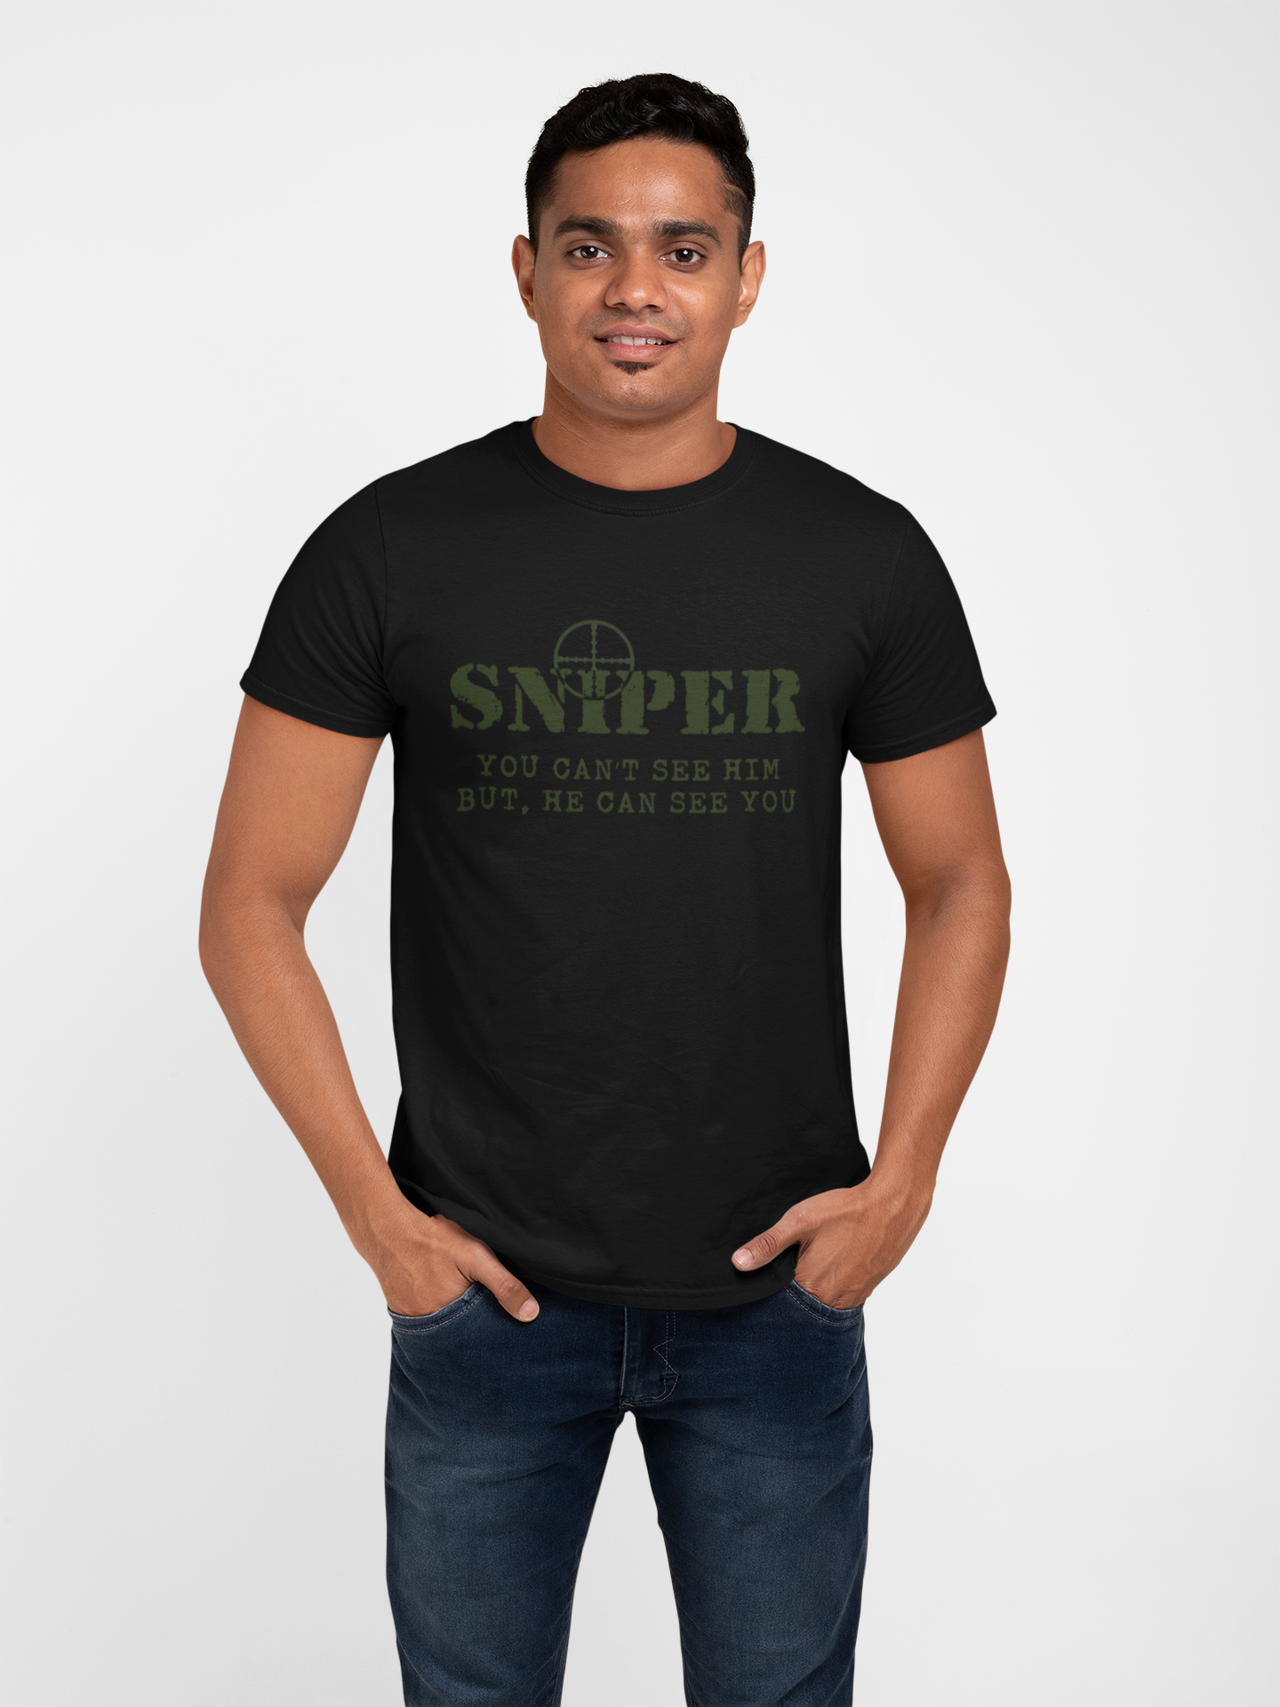 Sniper T-shirt - Sniper, You Can't See Him..... (Men)